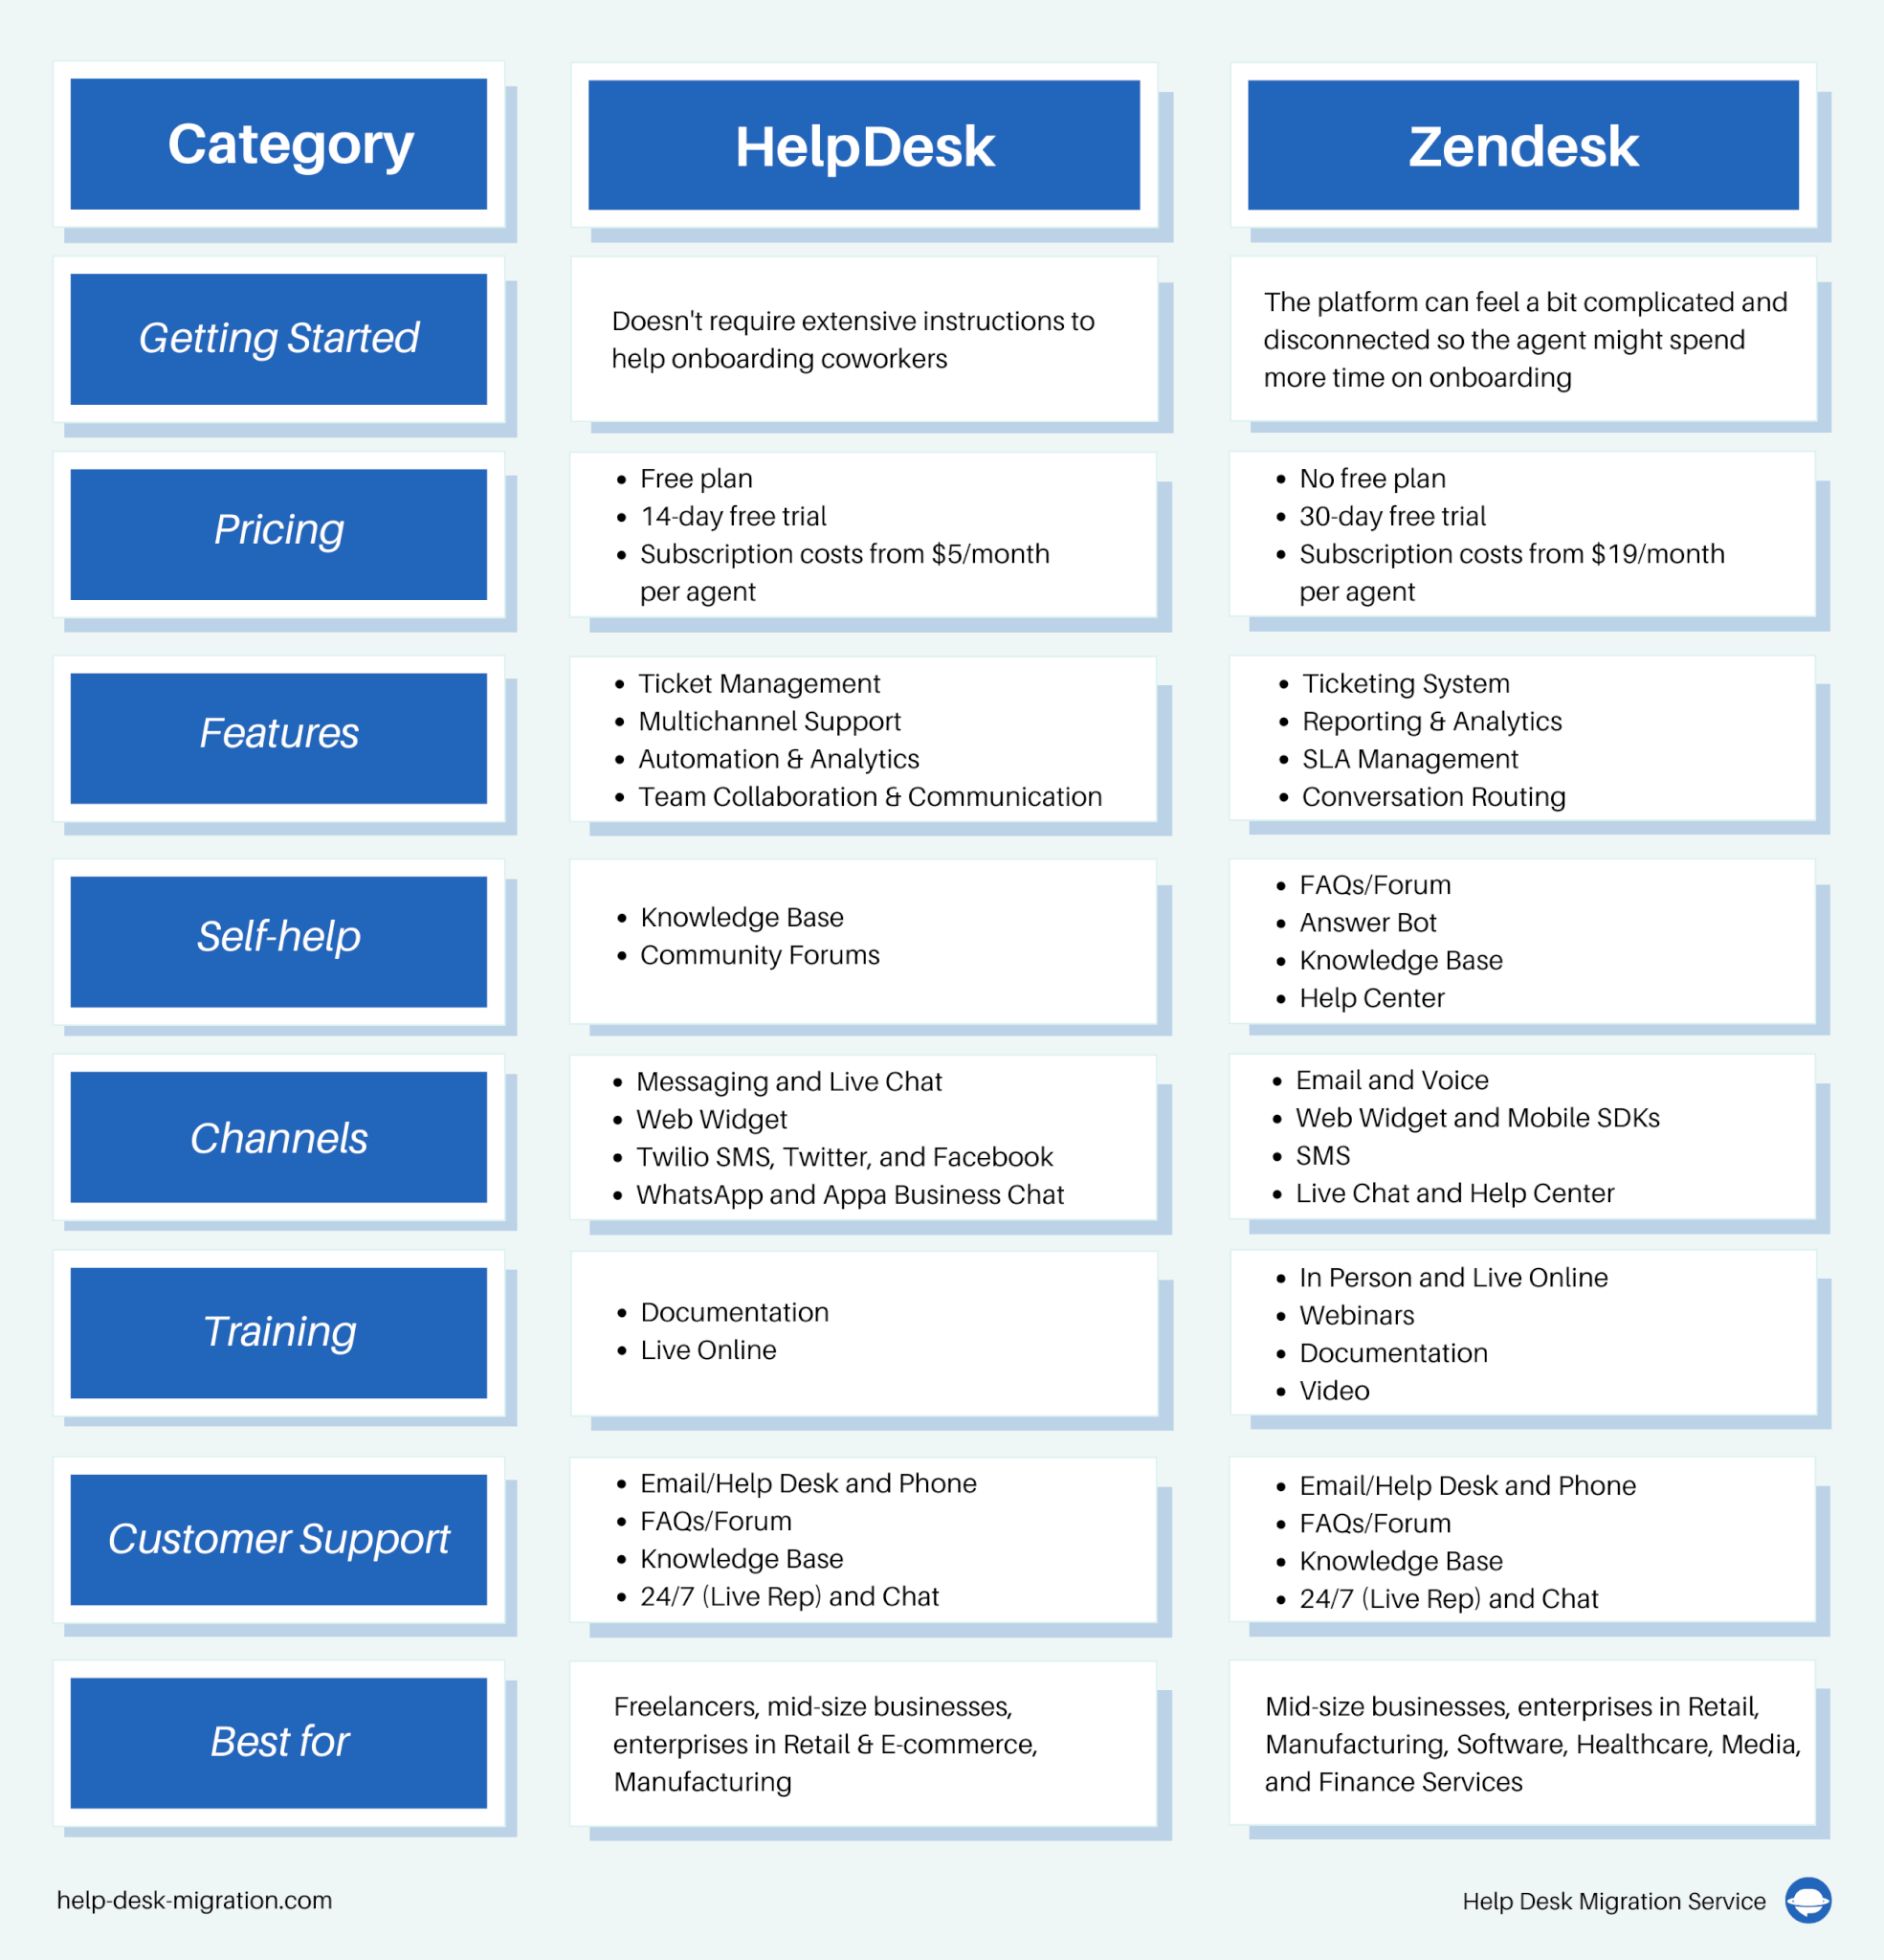 HelpDesk vs Zendesk